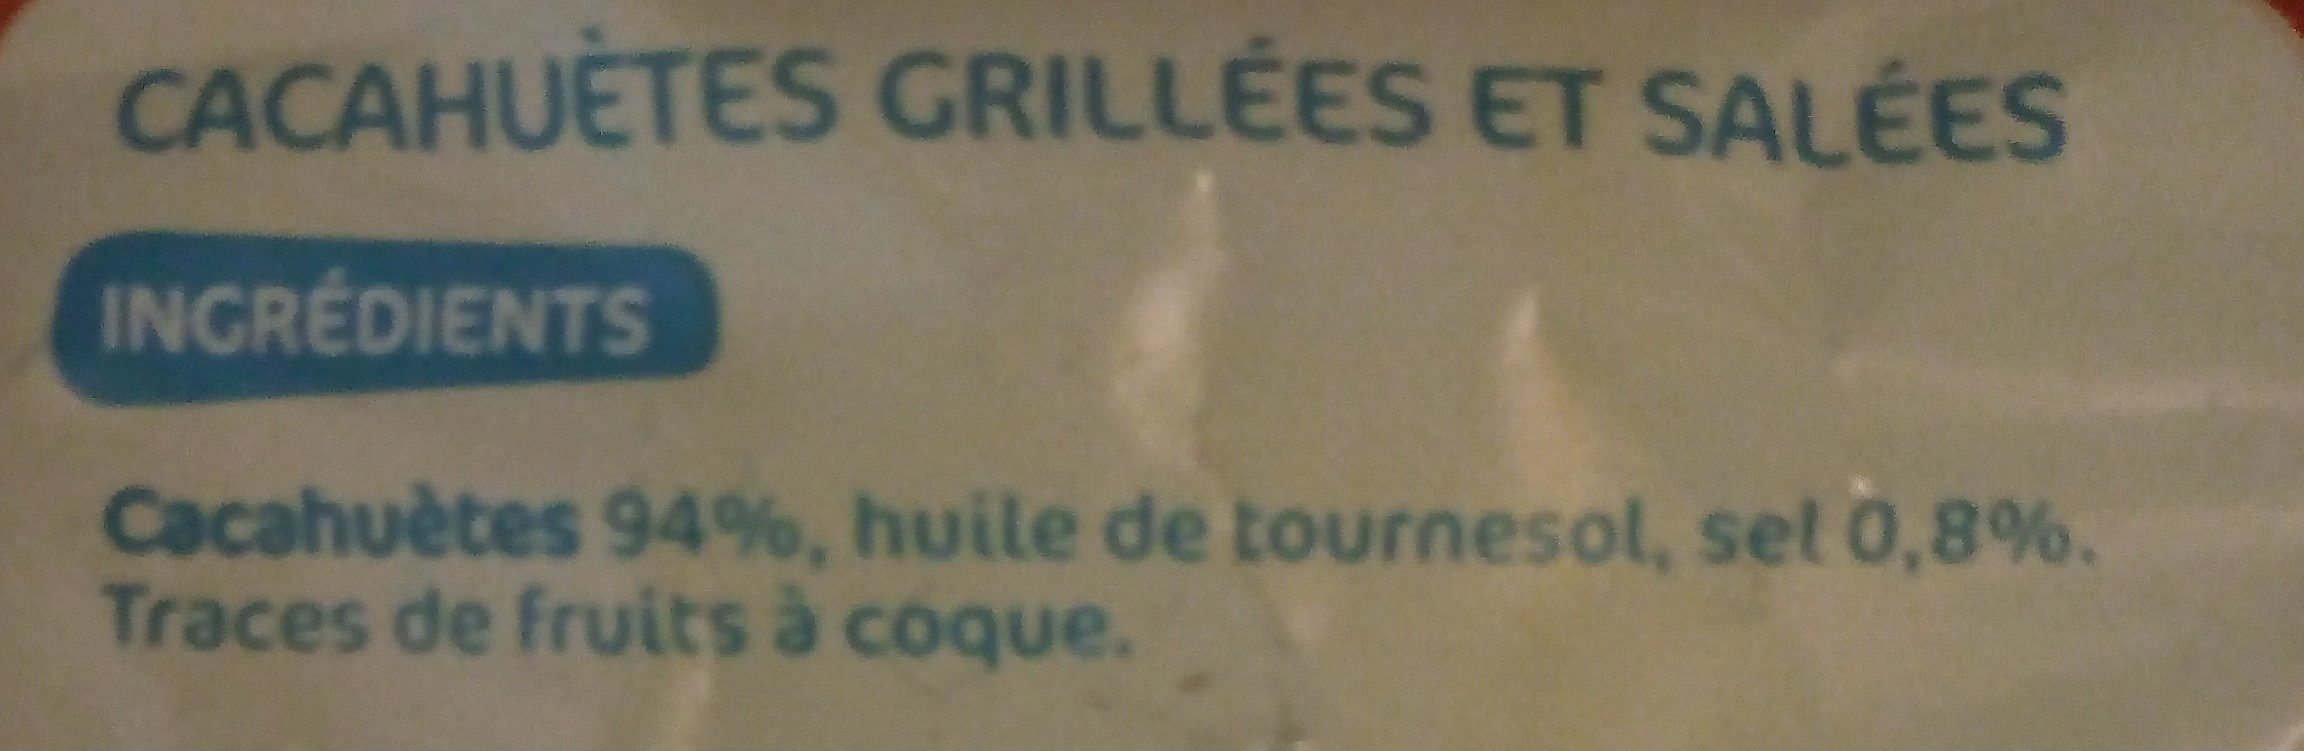 Cacahuètes grillées et salées - Ingredients - fr